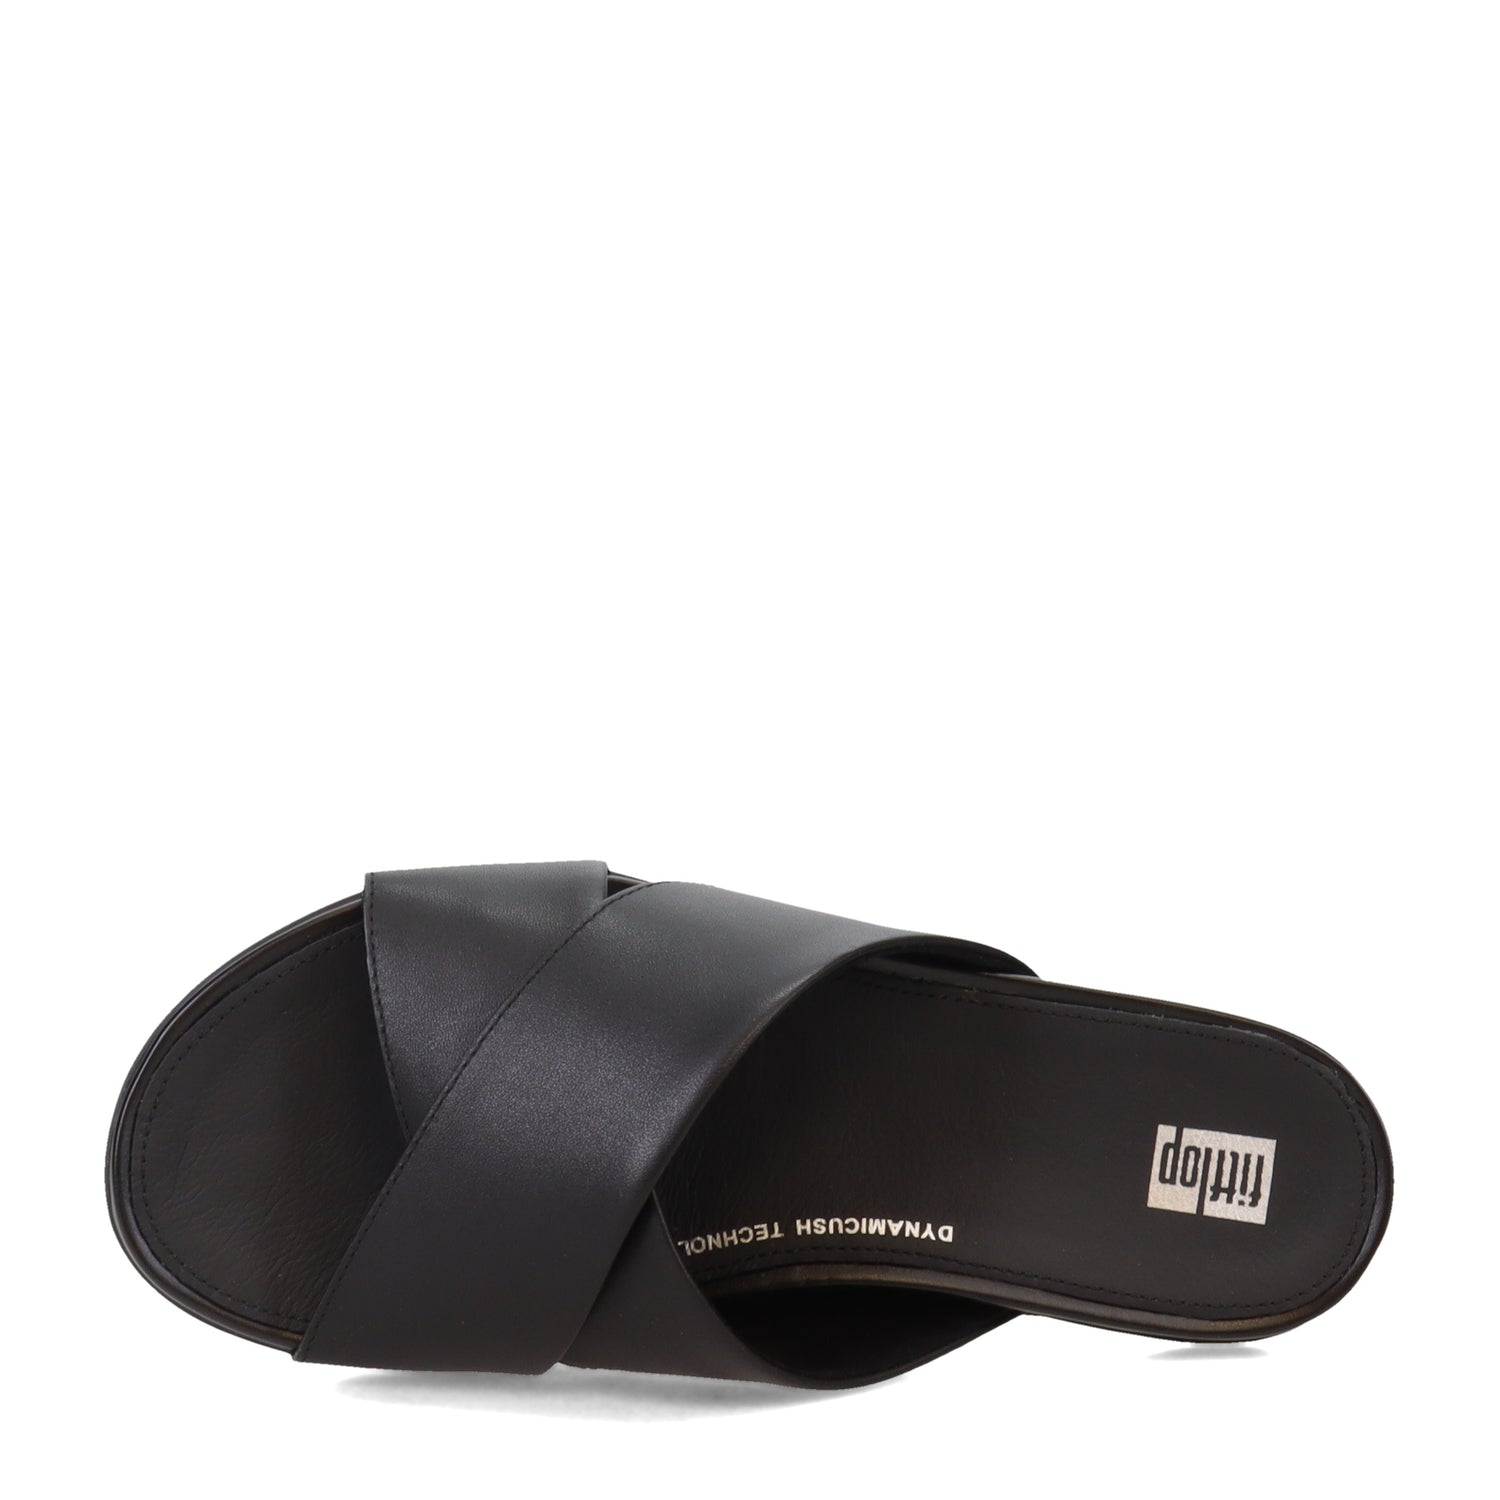 Peltz Shoes  Women's FitFlop Gracie Cross Slide Black FD8-090